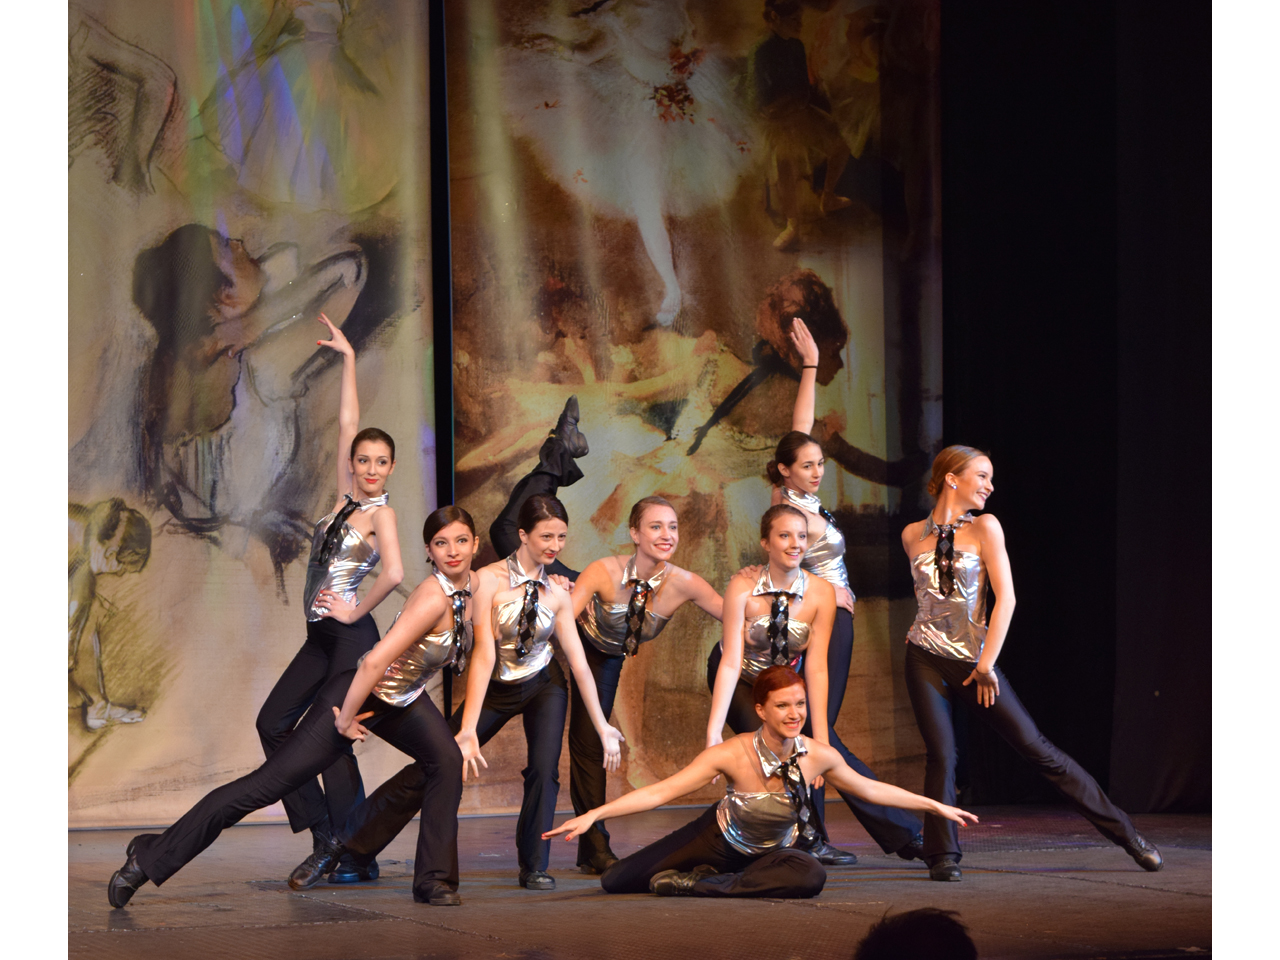 DANCE PLUS BALLET STUDIO Balet studio Belgrade - Photo 3